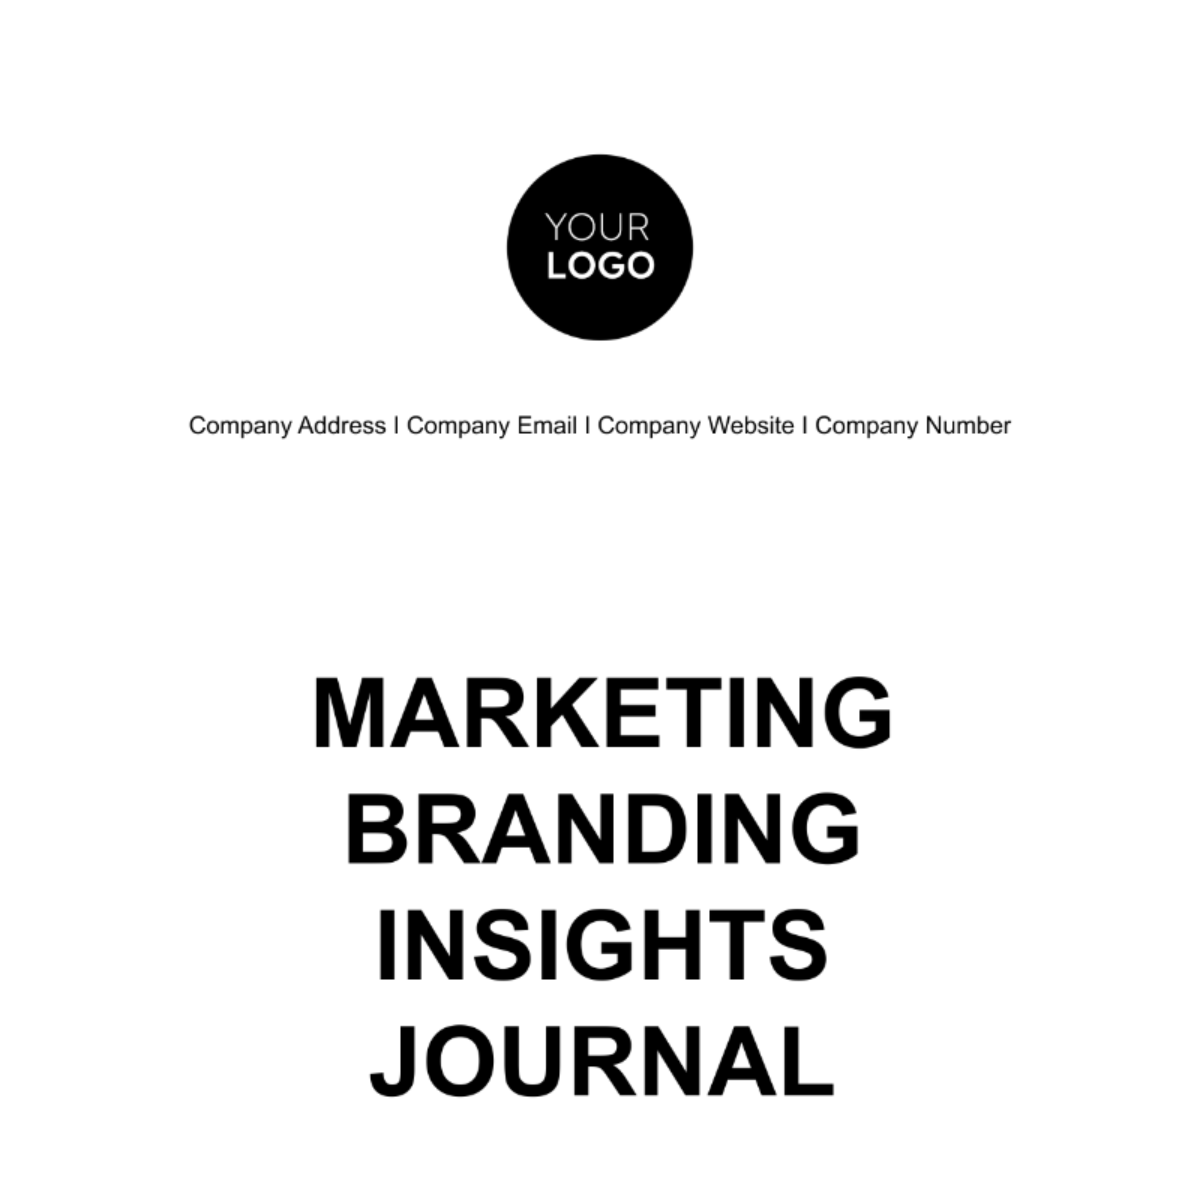 Marketing Branding Insights Journal Template